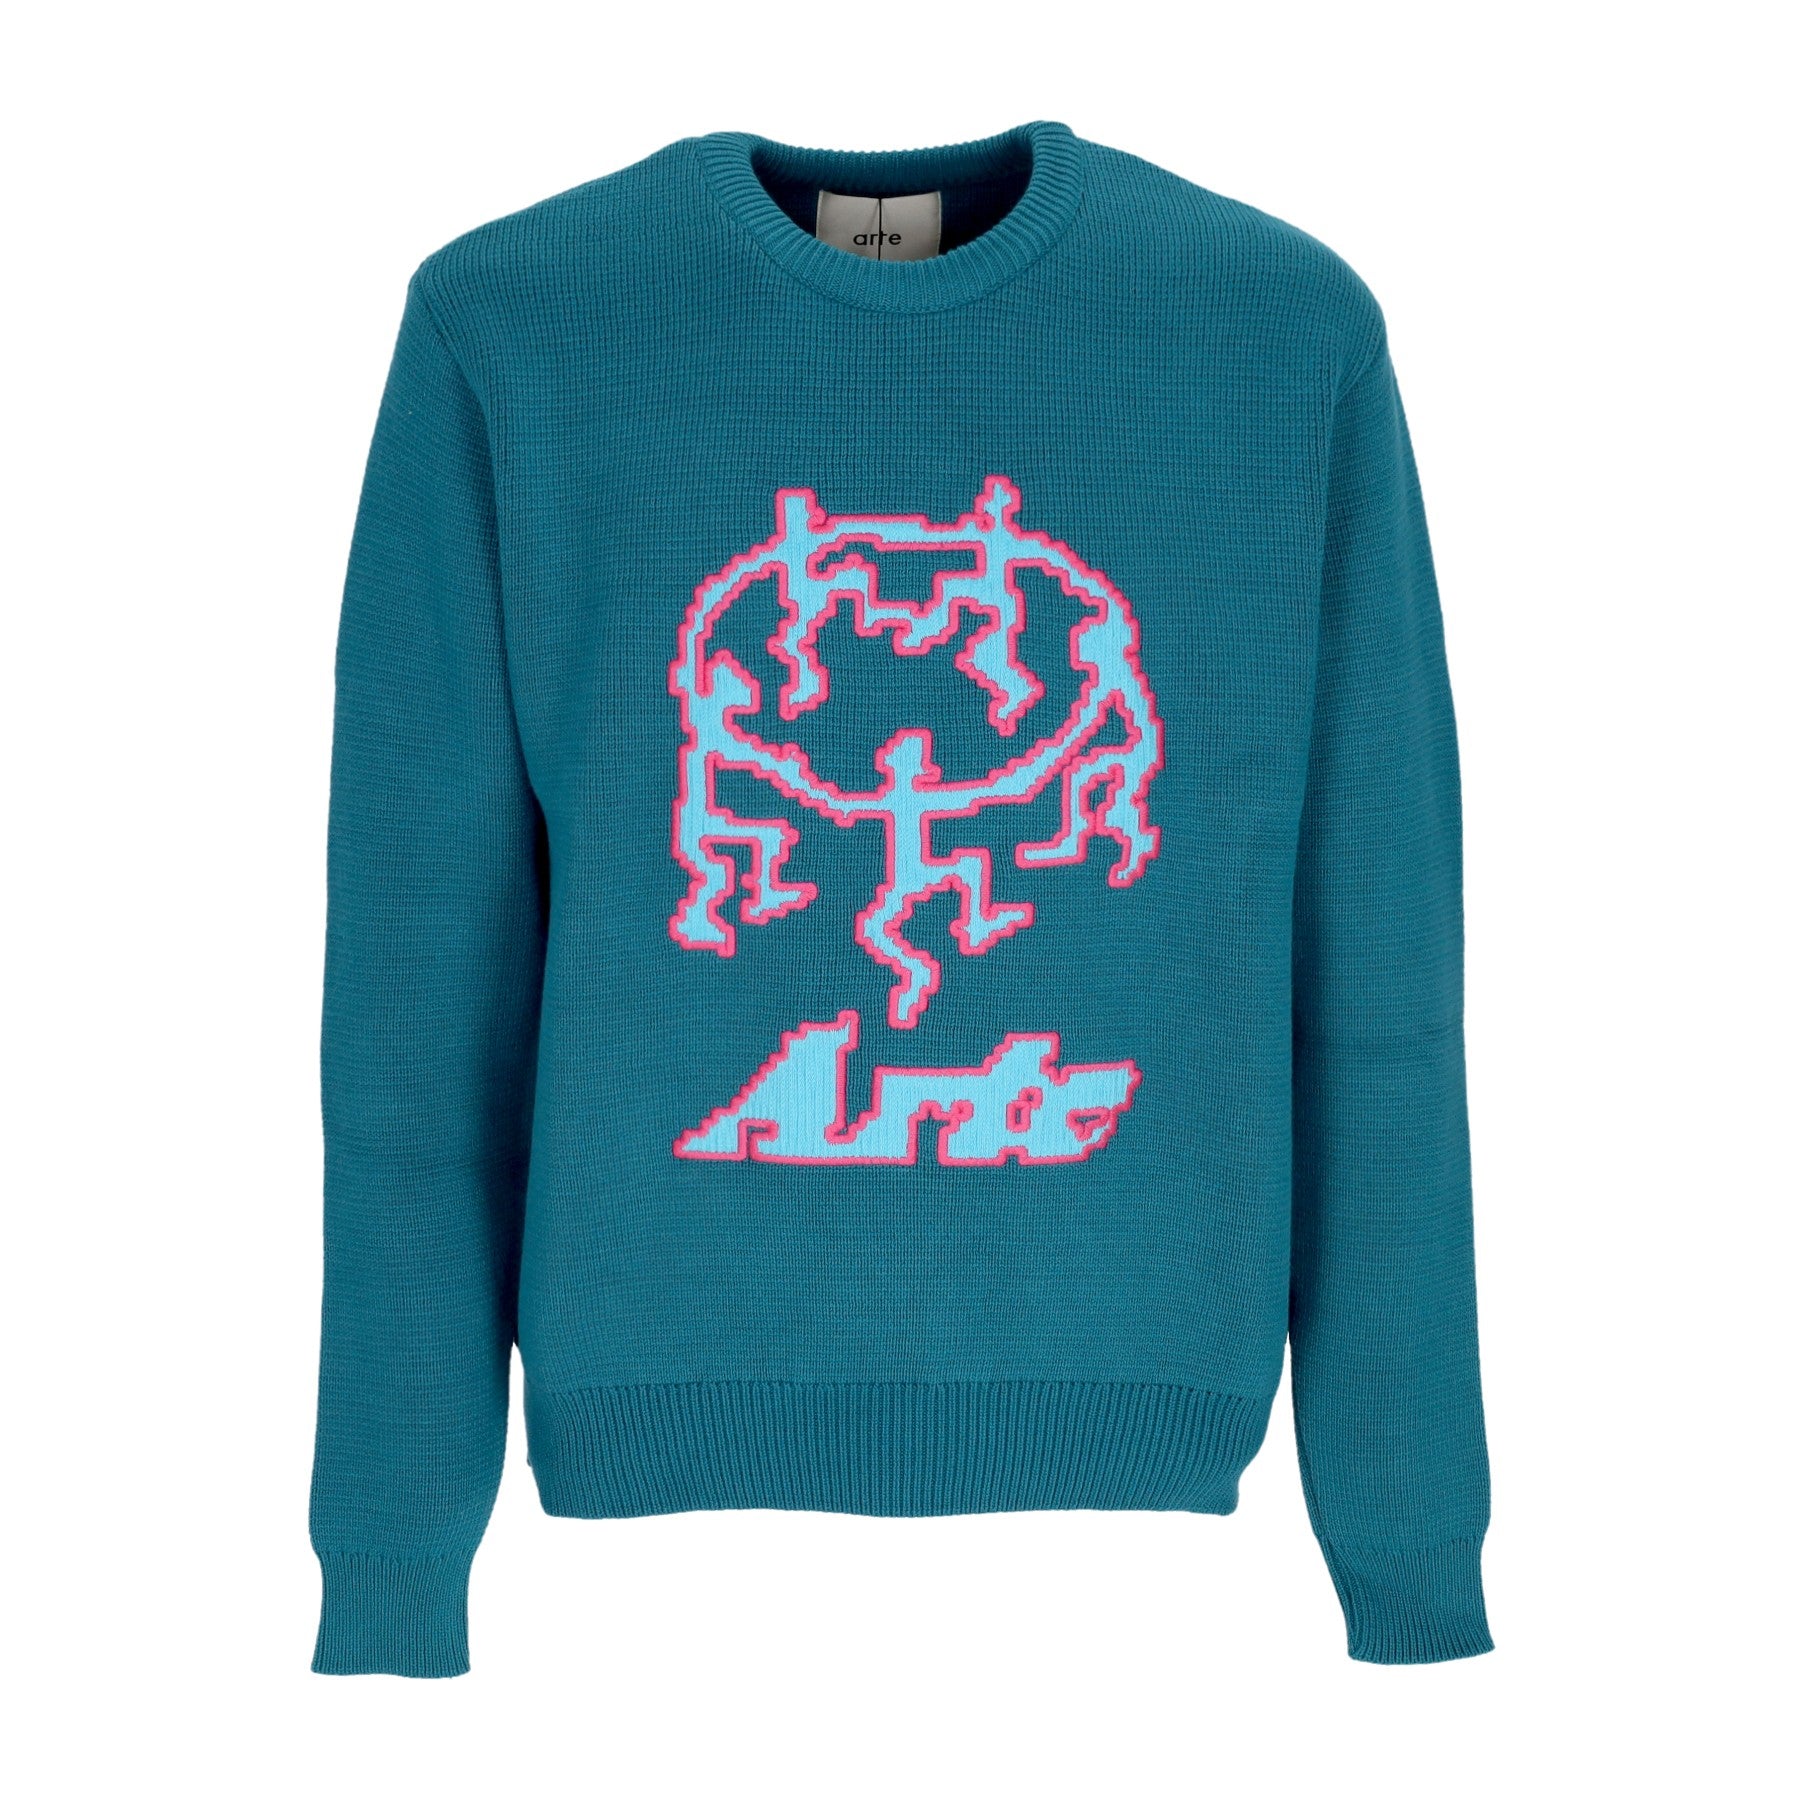 Arte, Maglione Uomo Pixel Dancers Sweater, Petrol Blue